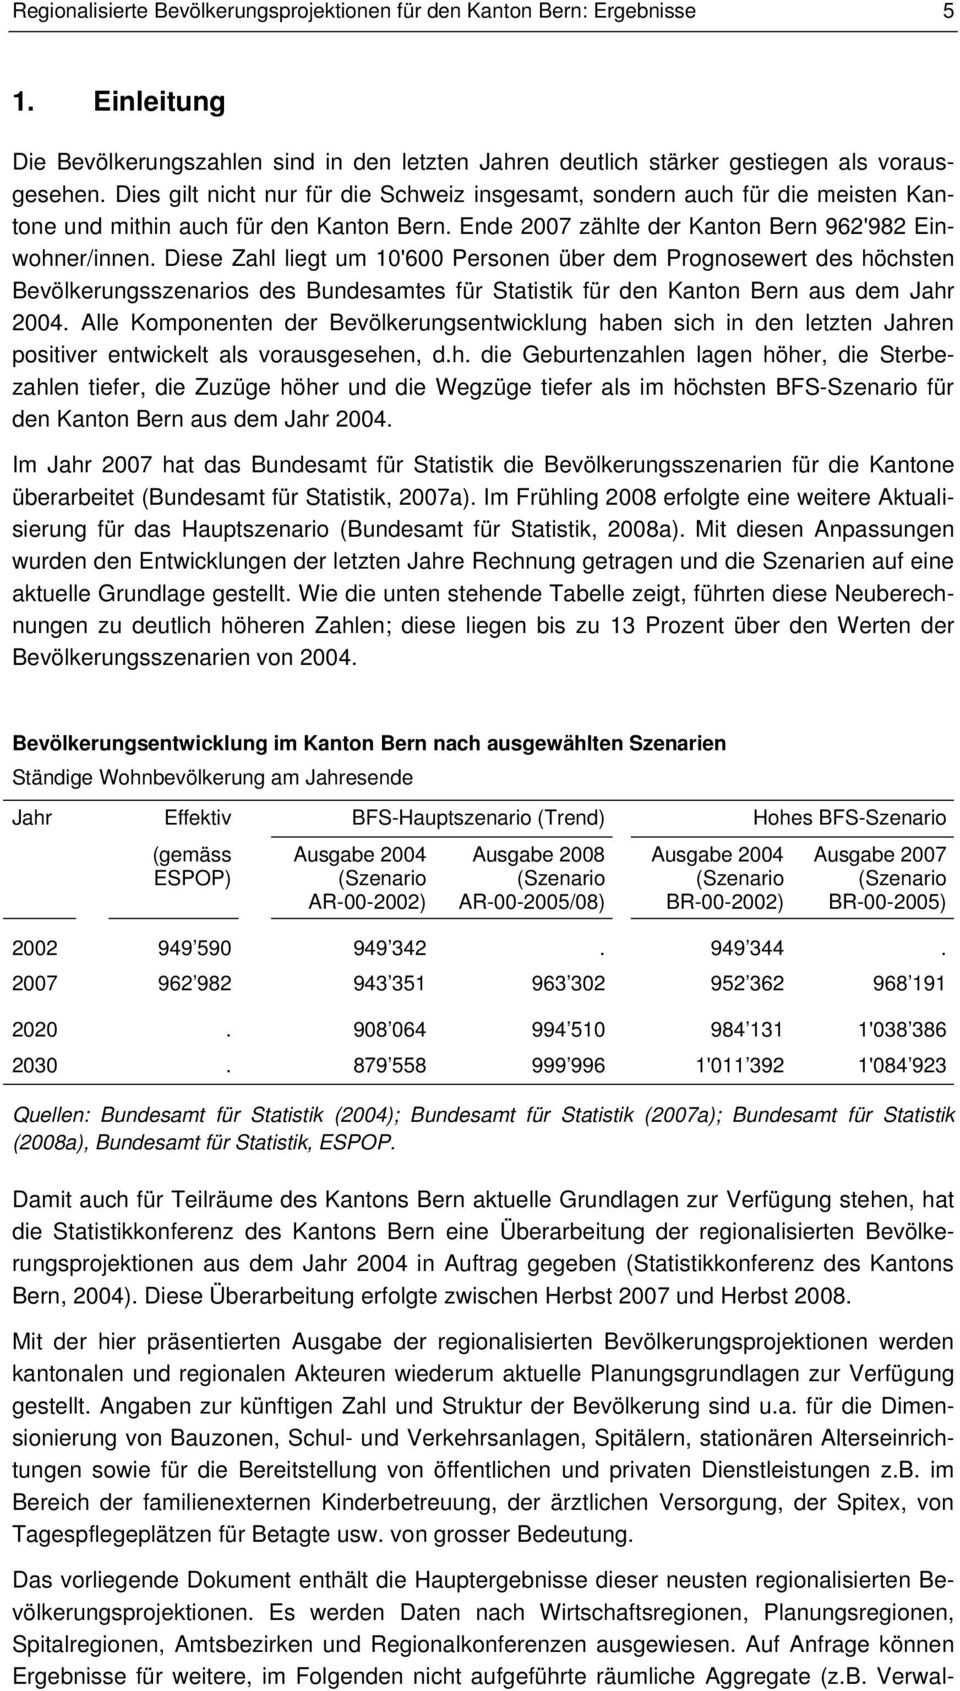 Diese Zahl liegt um 10'600 Personen über dem Prognosewert des höchsten Bevölkerungsszenarios des Bundesamtes für Statistik für den Kanton Bern aus dem Jahr 2004.